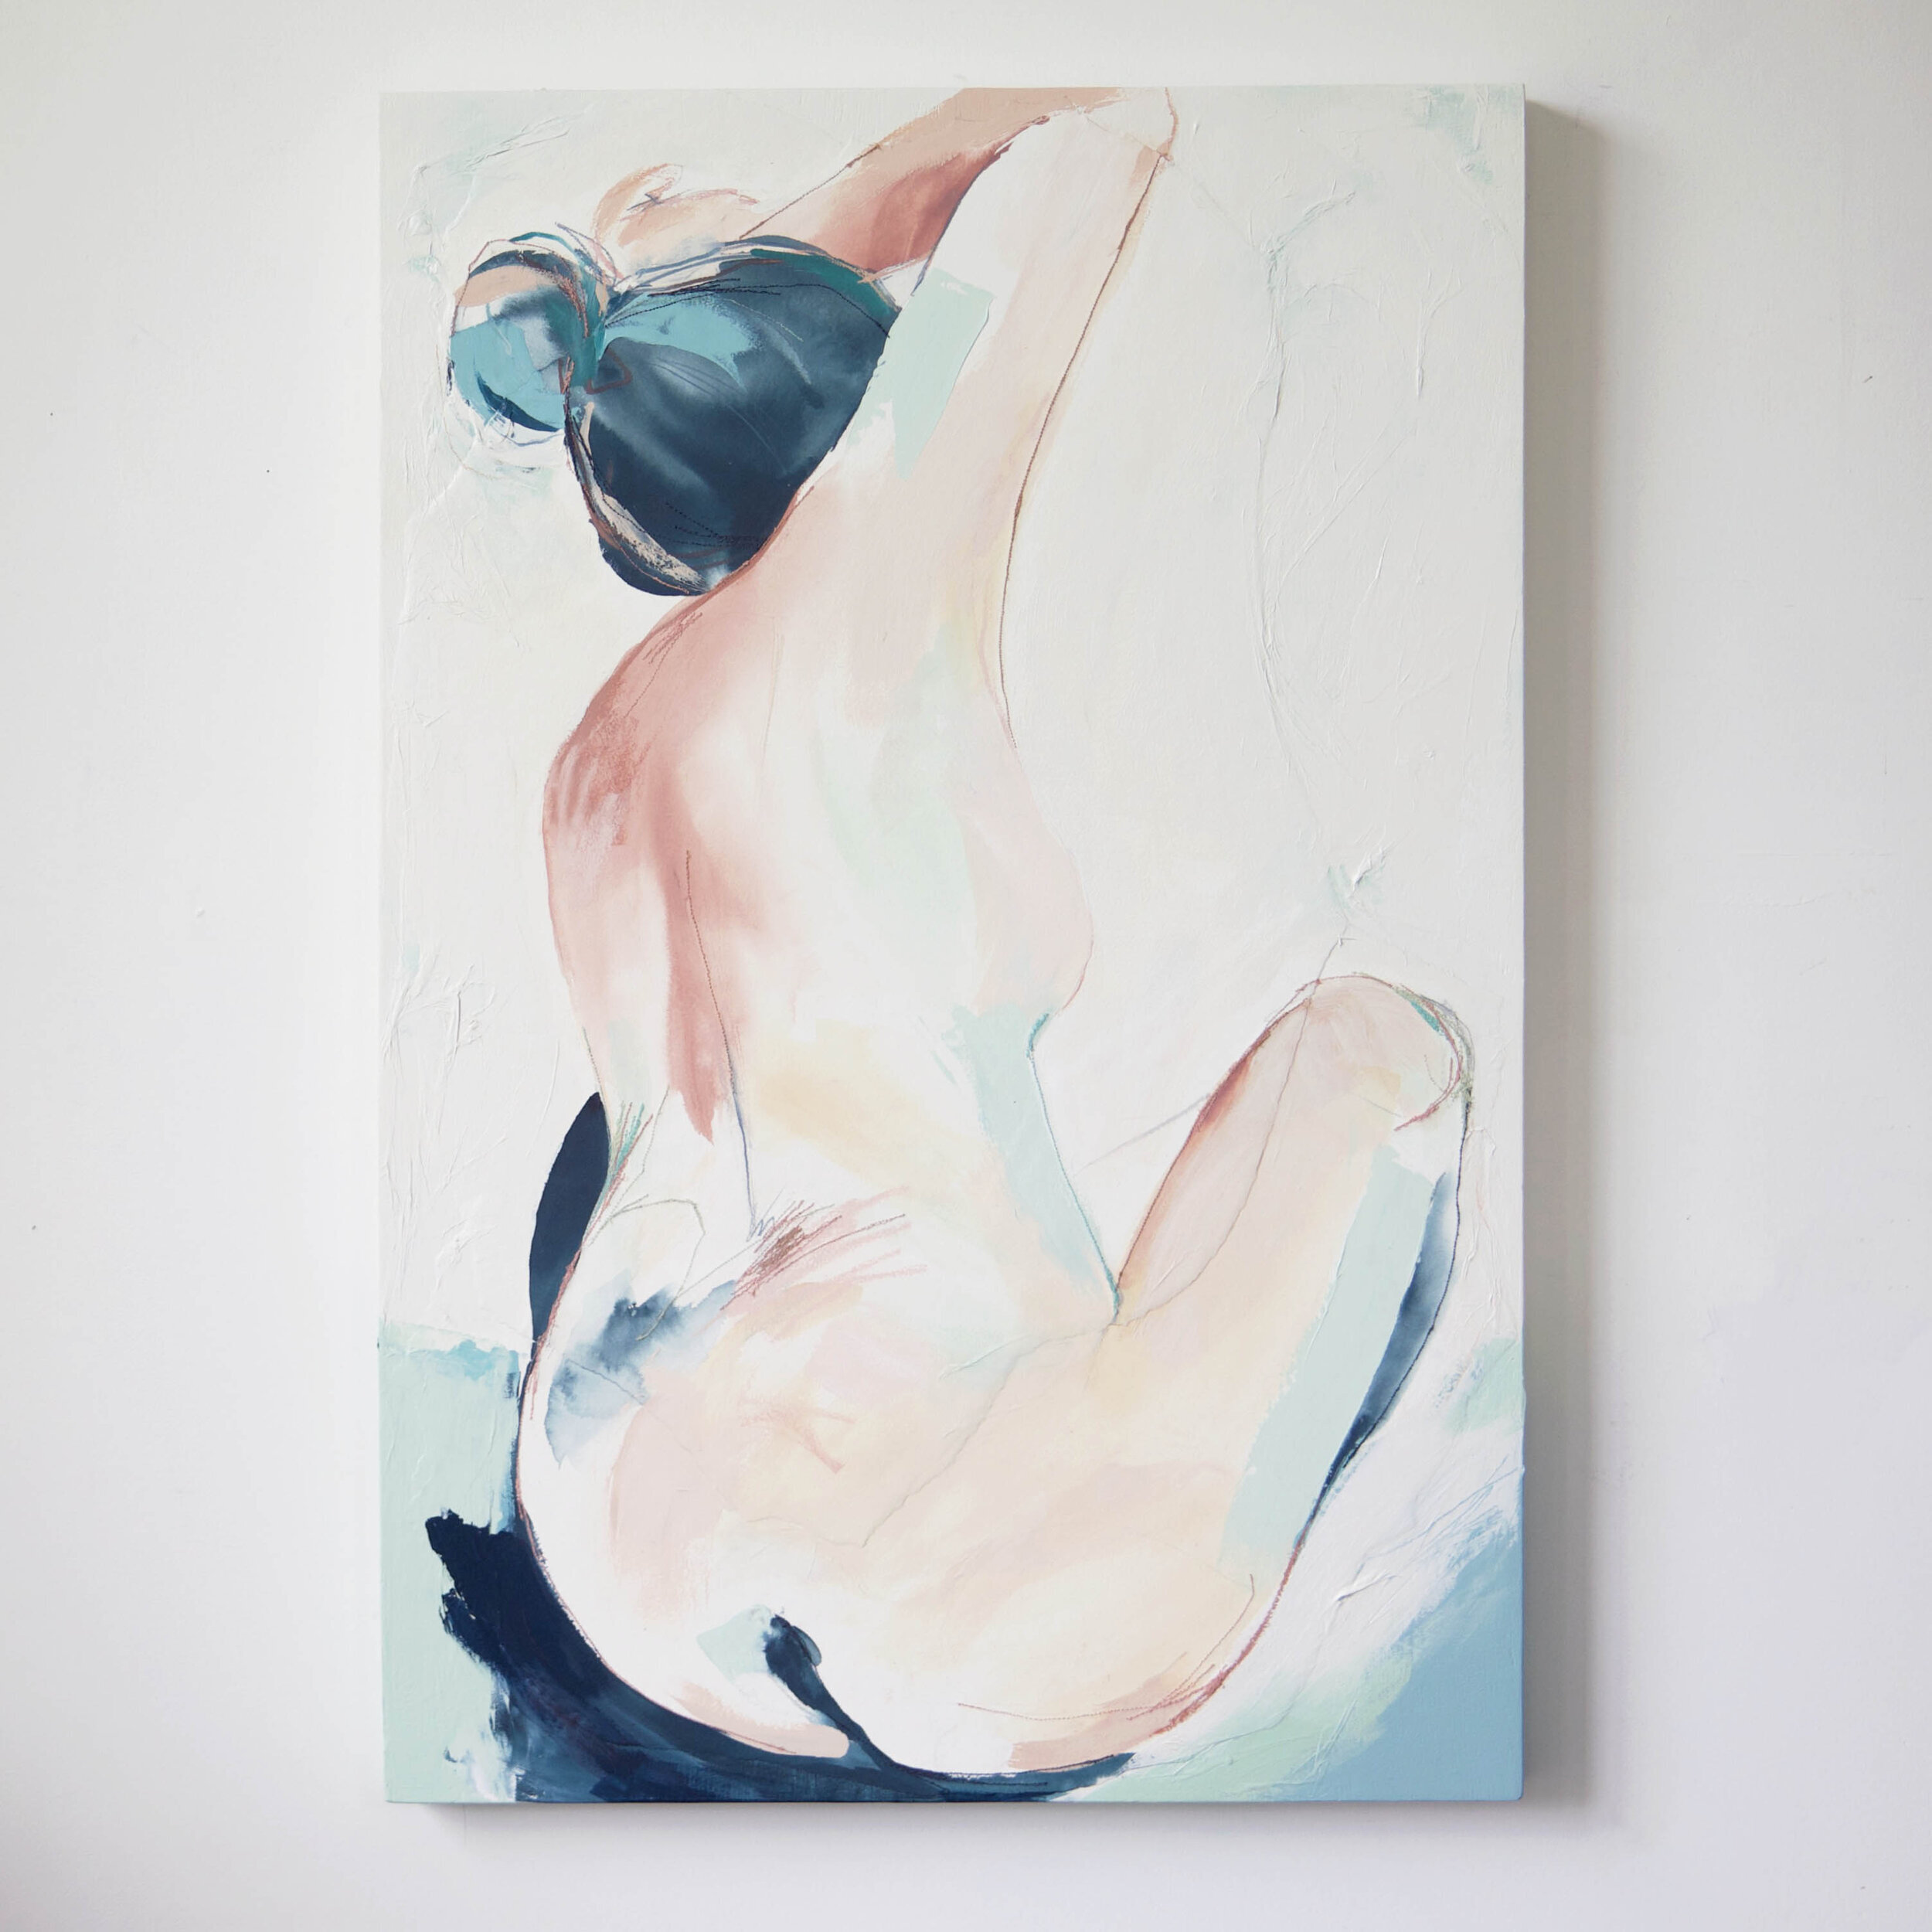 1+Deeann+Rieves.+abstract+figure+painting.+blush+peach+teal+green1.jpg